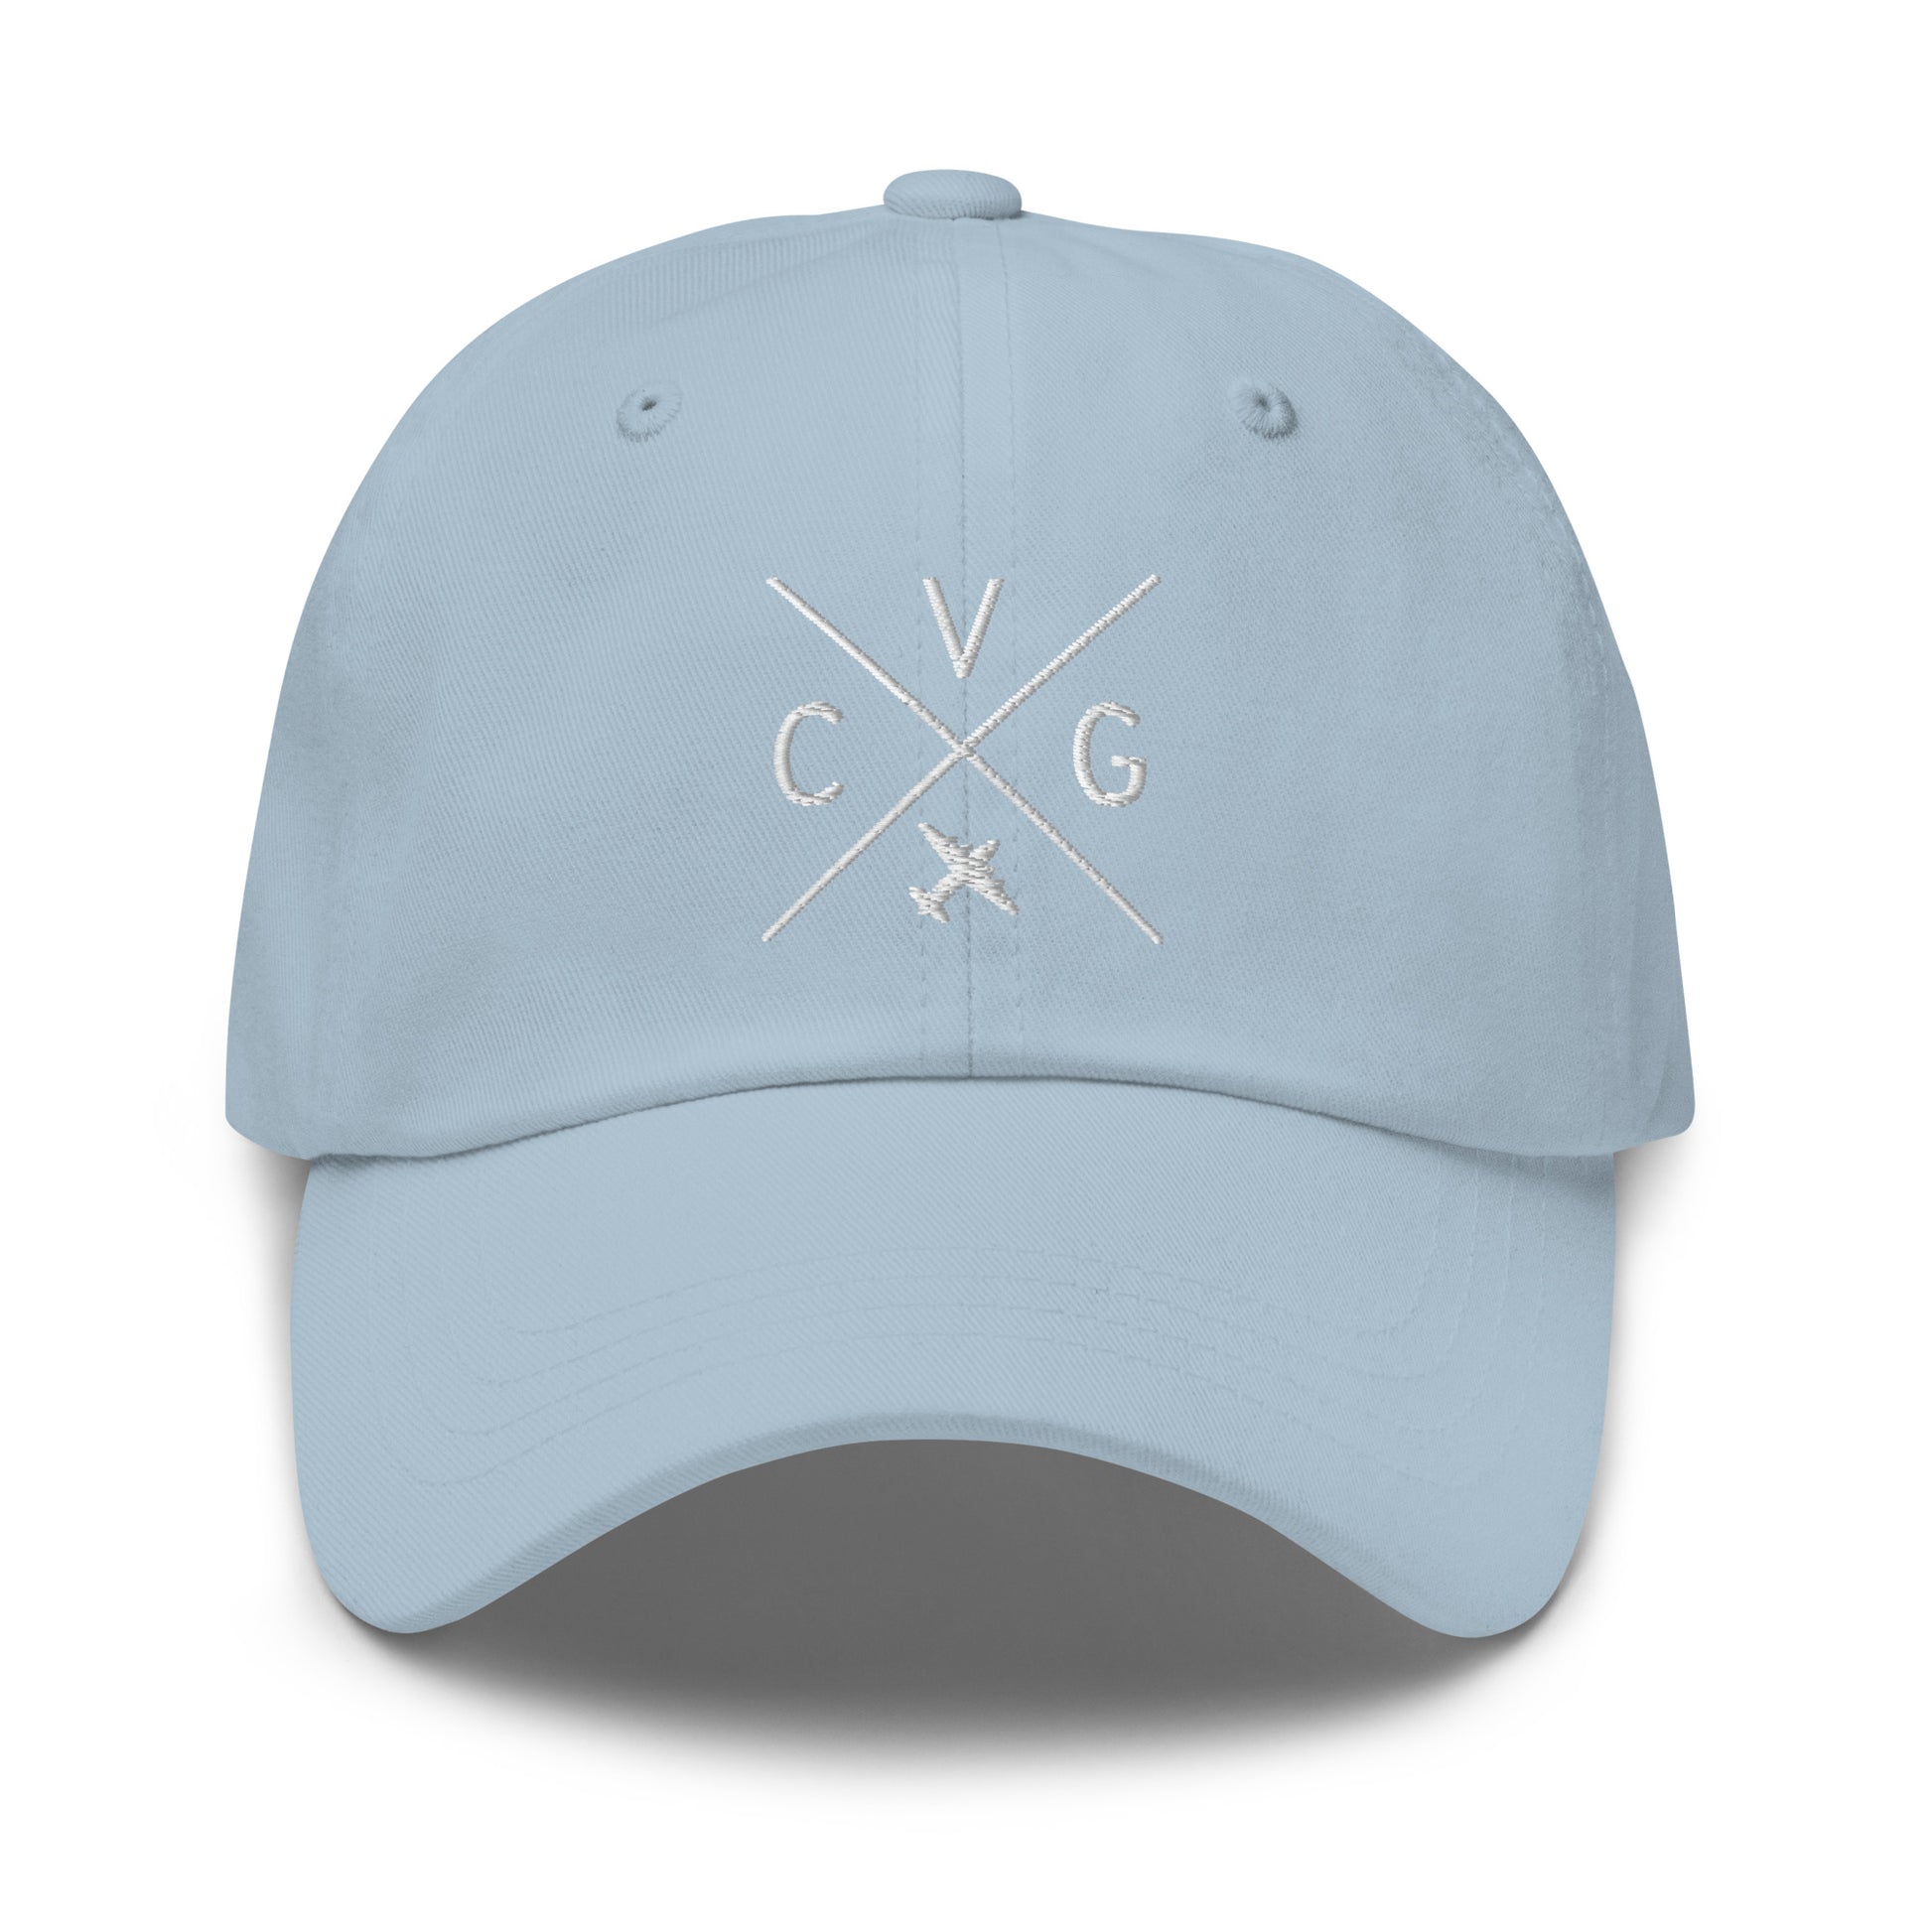 Crossed-X Dad Hat - White • CVG Cincinnati • YHM Designs - Image 28